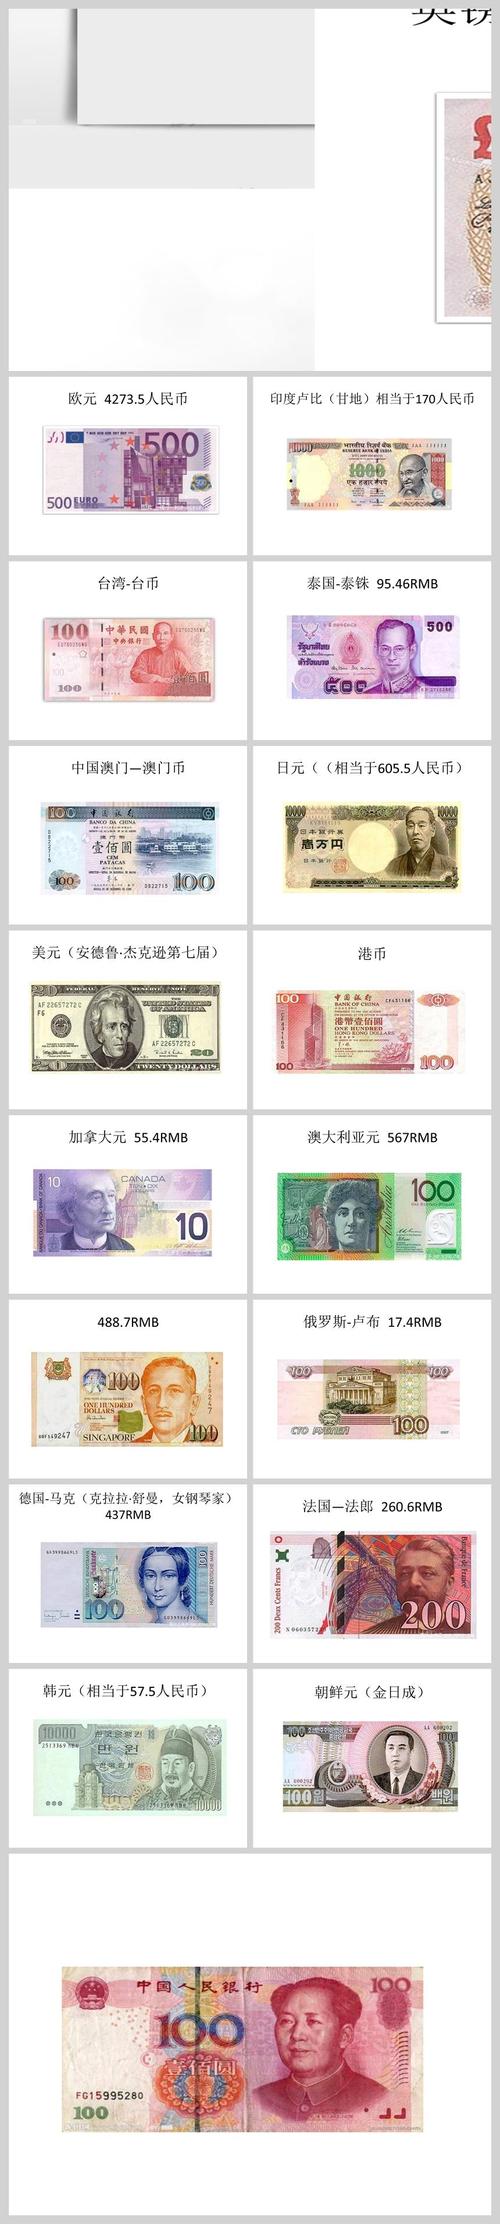 全世界钱币排名的相关图片